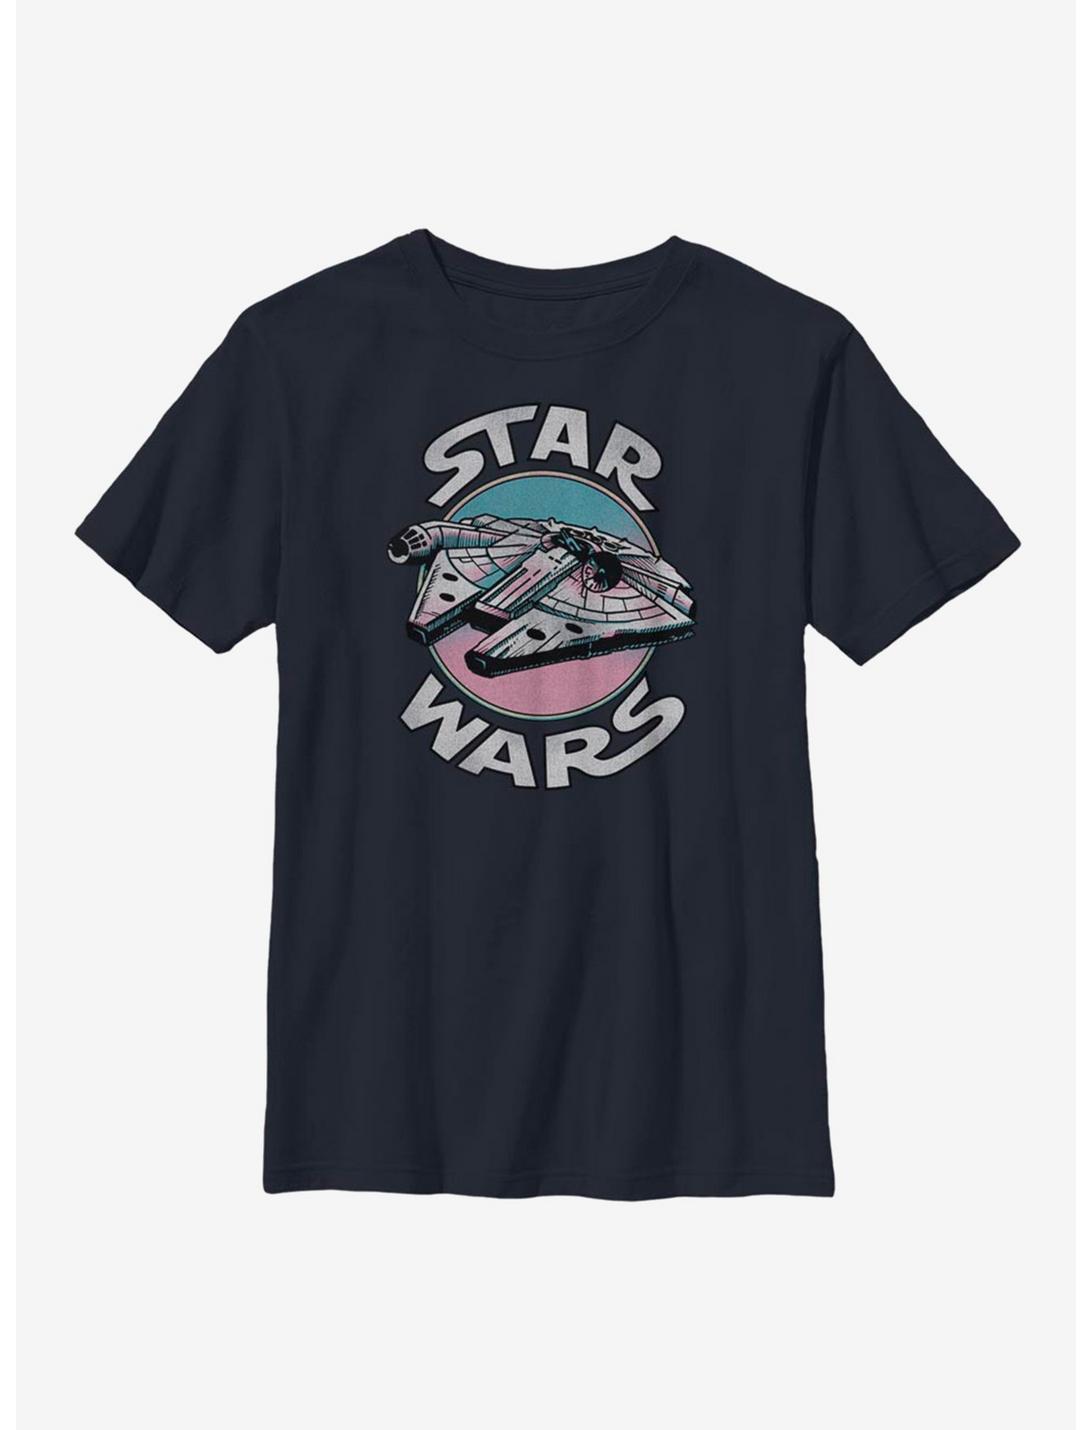 Star Wars Blastoff Cantina Youth T-Shirt, NAVY, hi-res